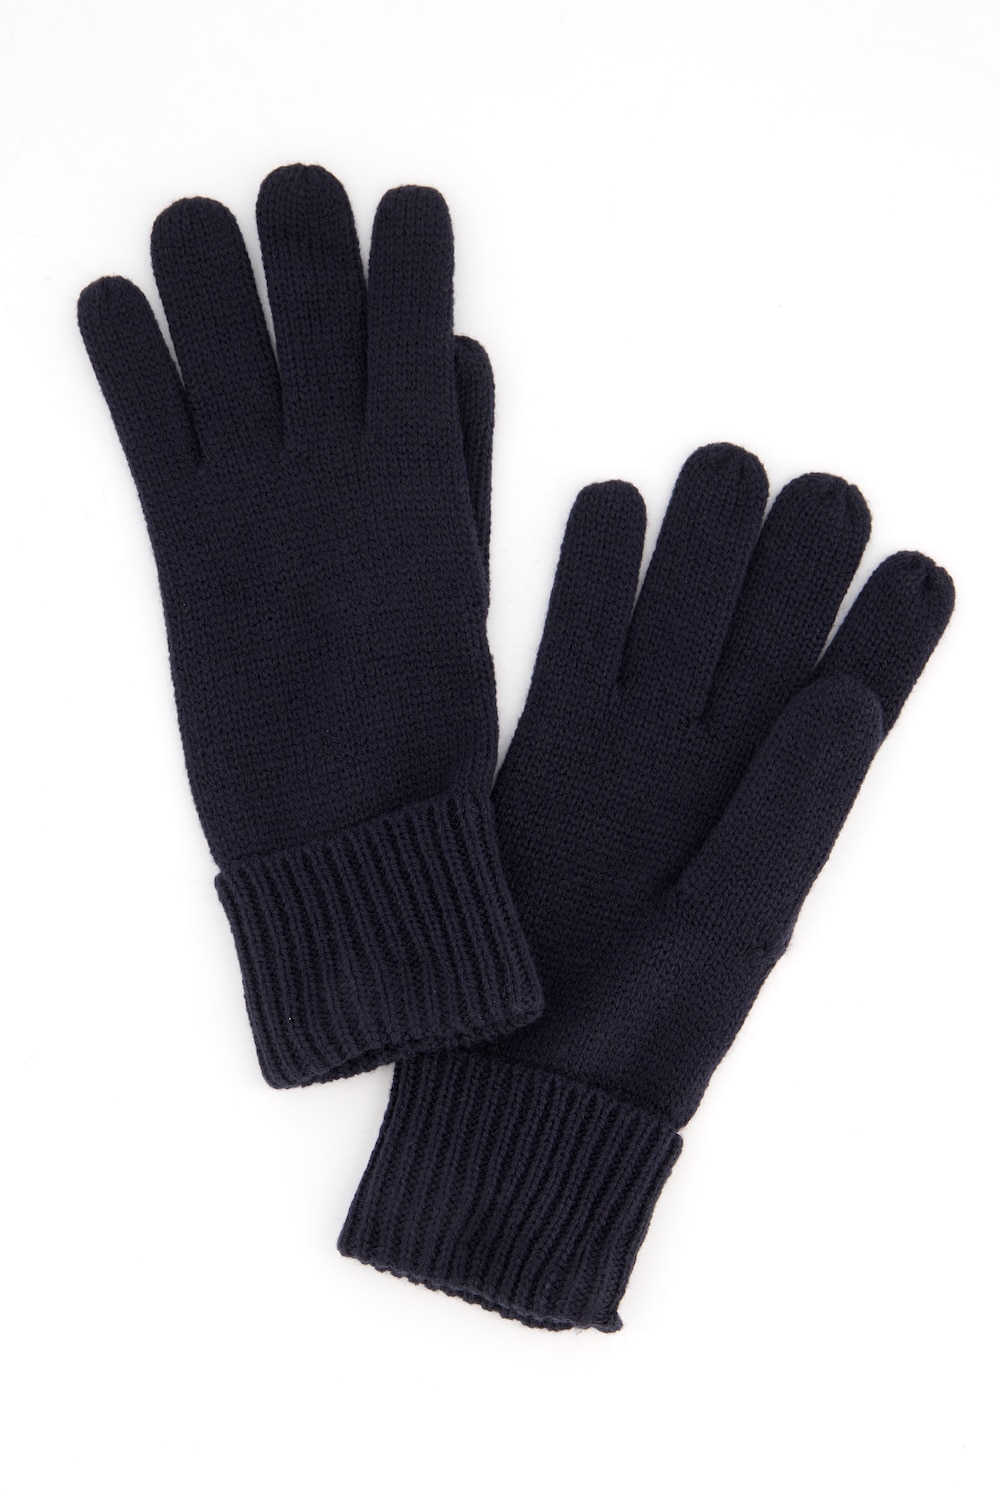 Handschuhe, Rippstrick-Bündchen, weicher Feinstrick